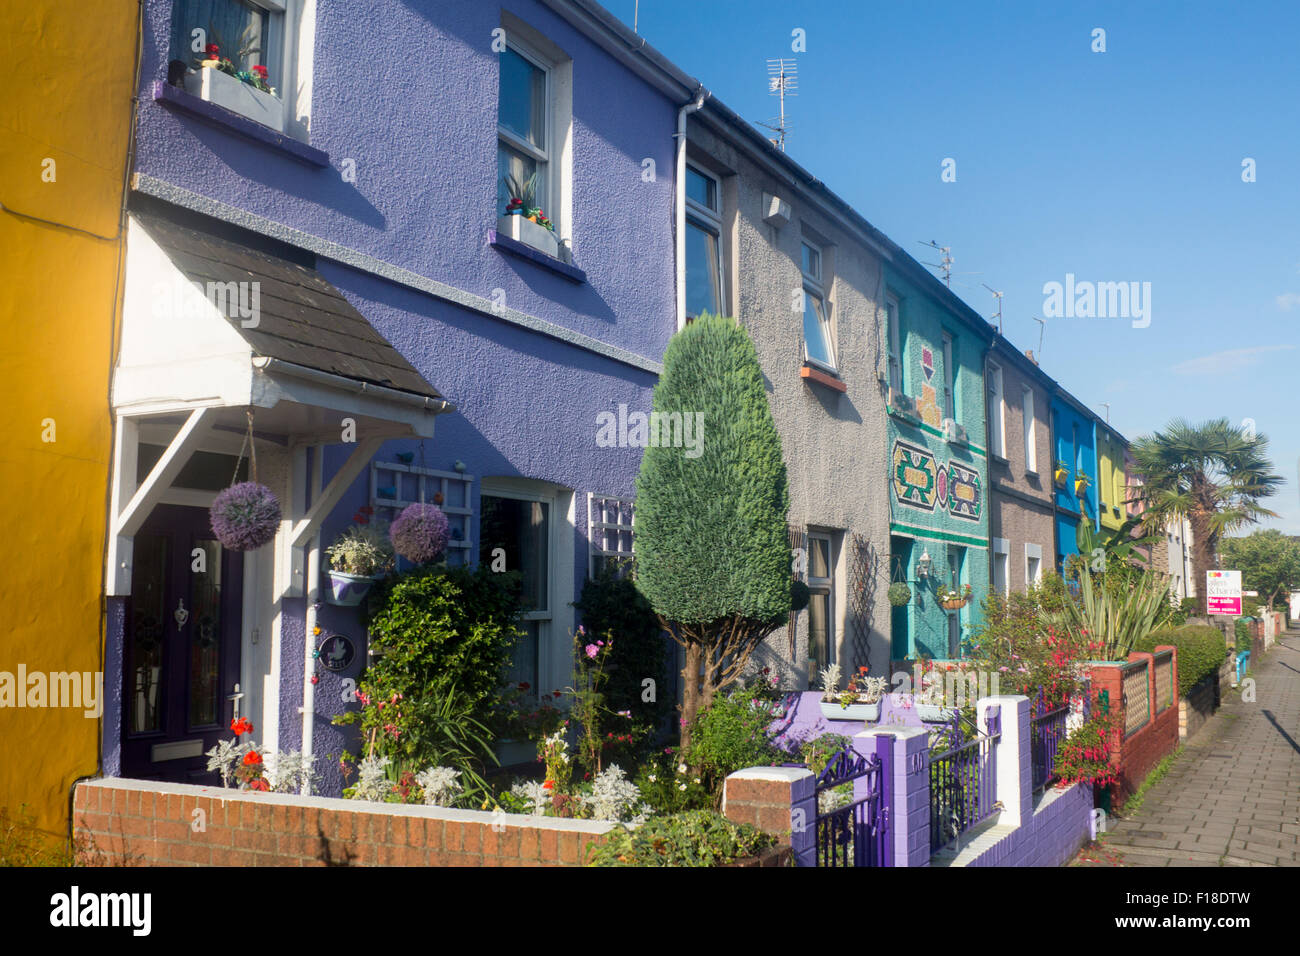 Verniciato colorato terrazza case a schiera cottages Roath Cardiff Wales UK Foto Stock